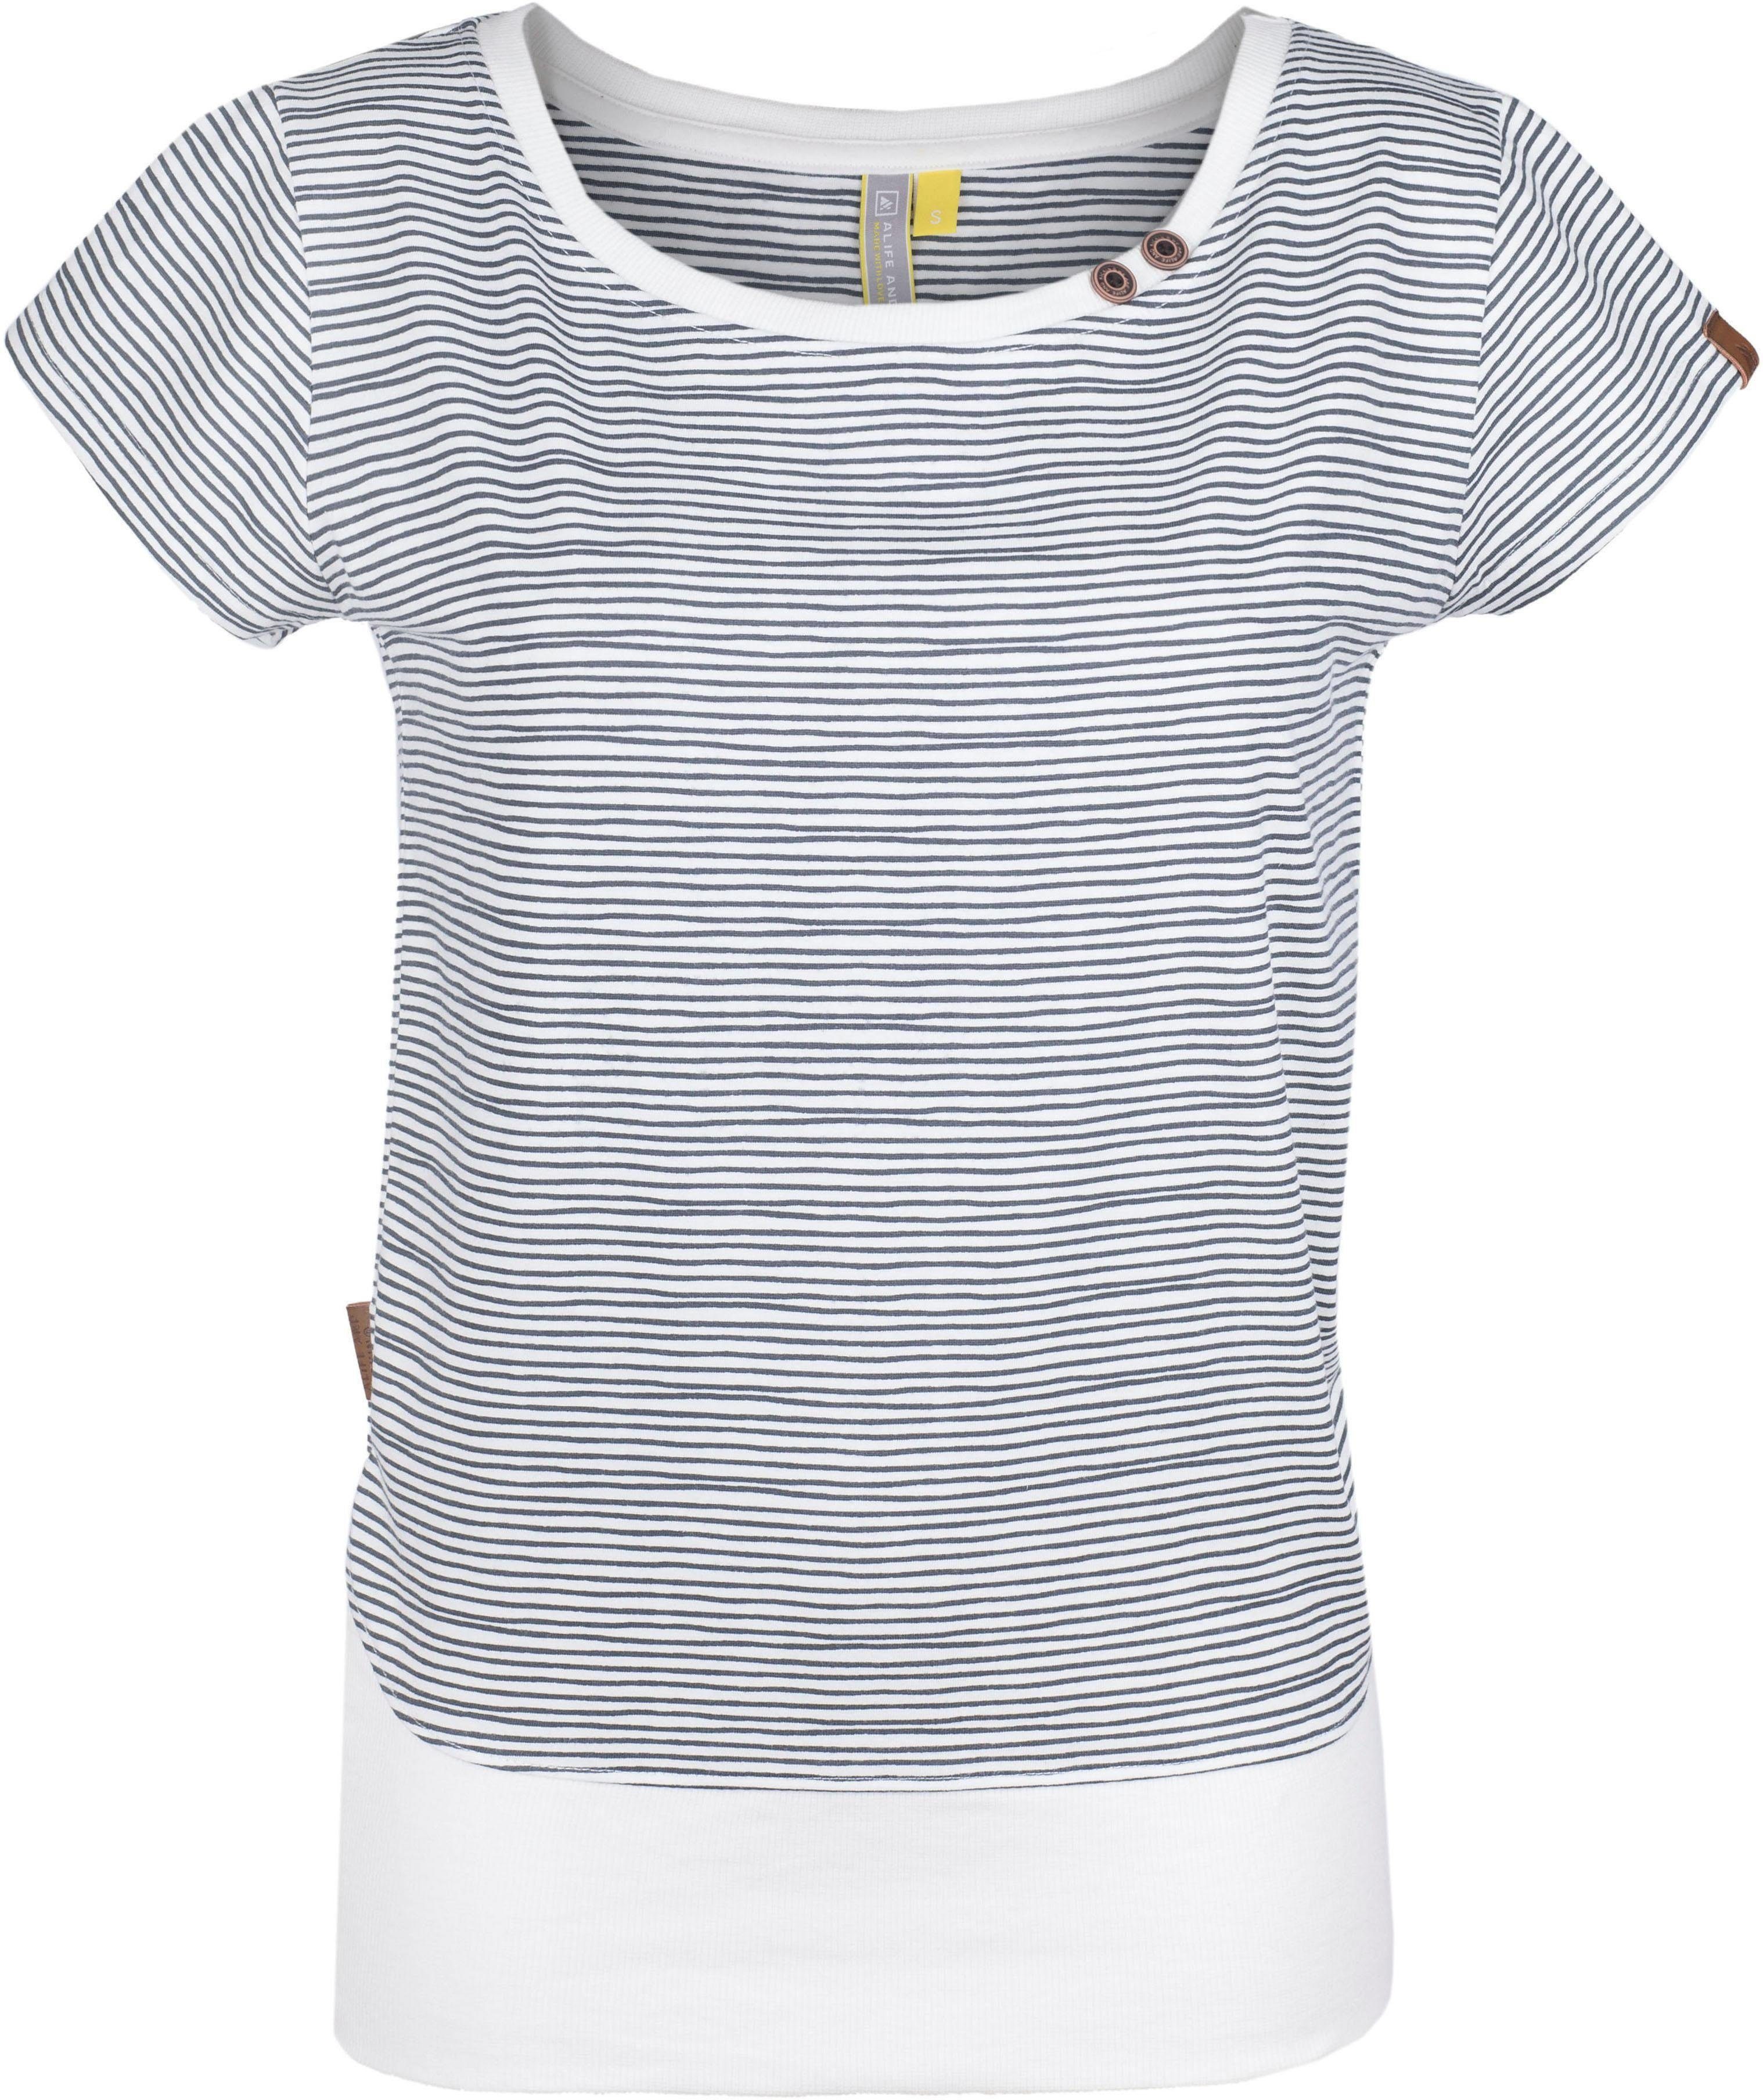 Alife & Kickin T-Shirt maritimes Shirt mit breitem Bündchen cloudy stripes